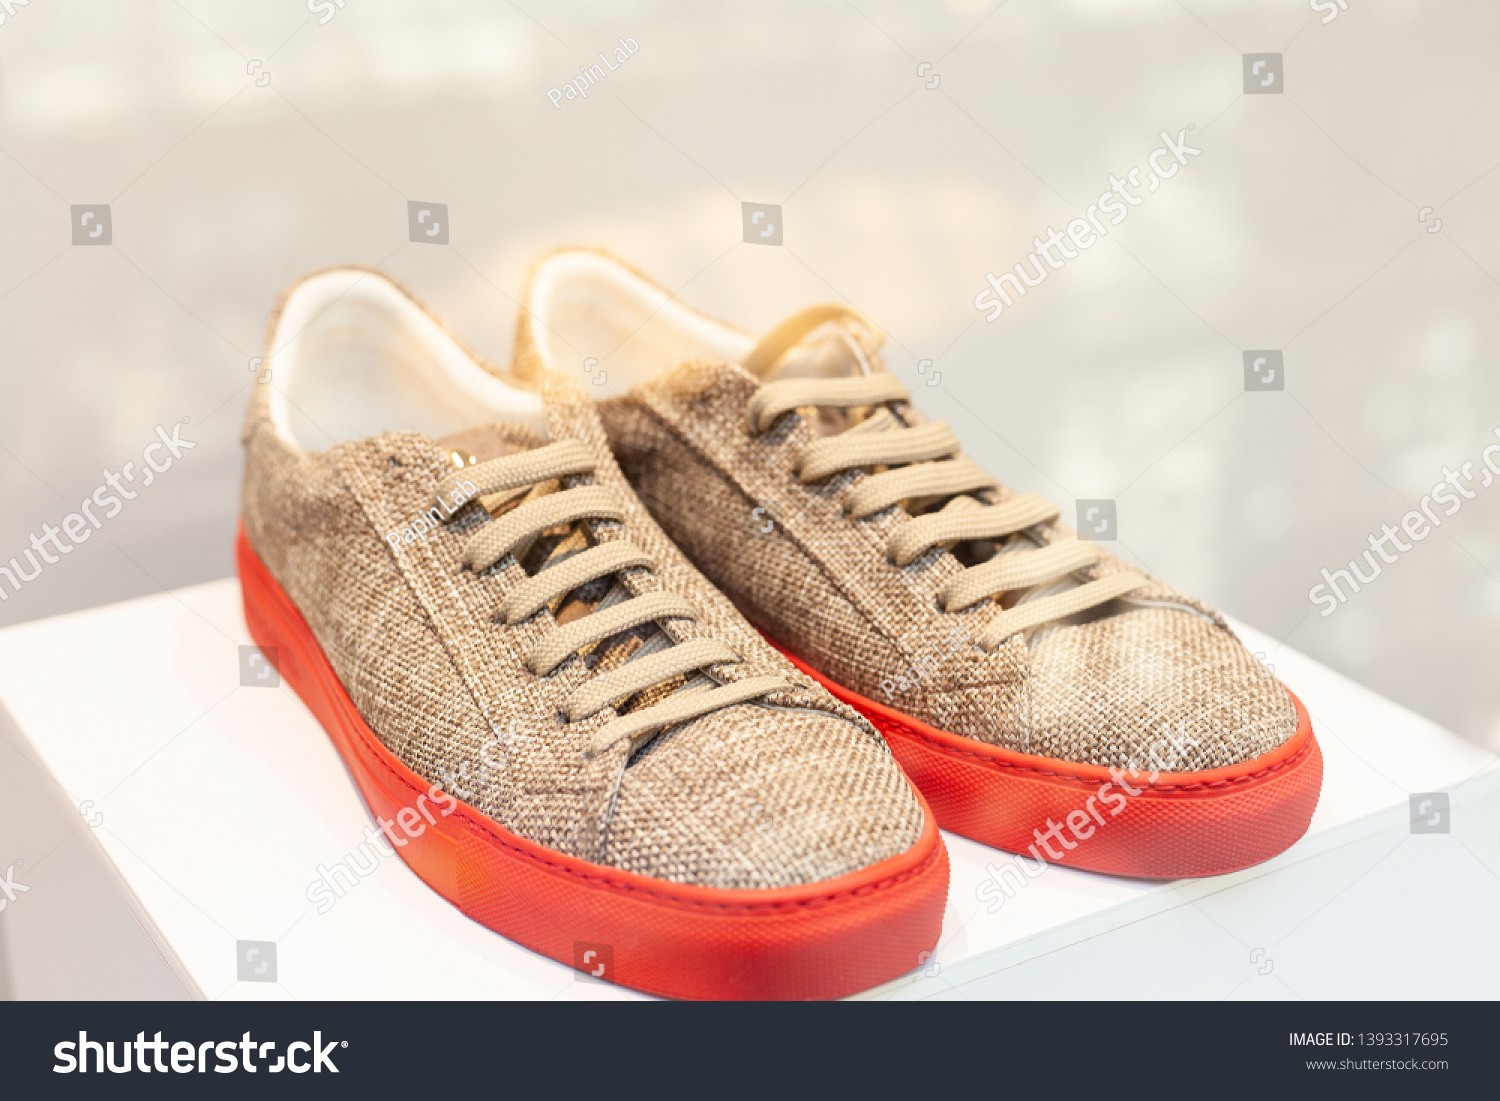 soles shoe store